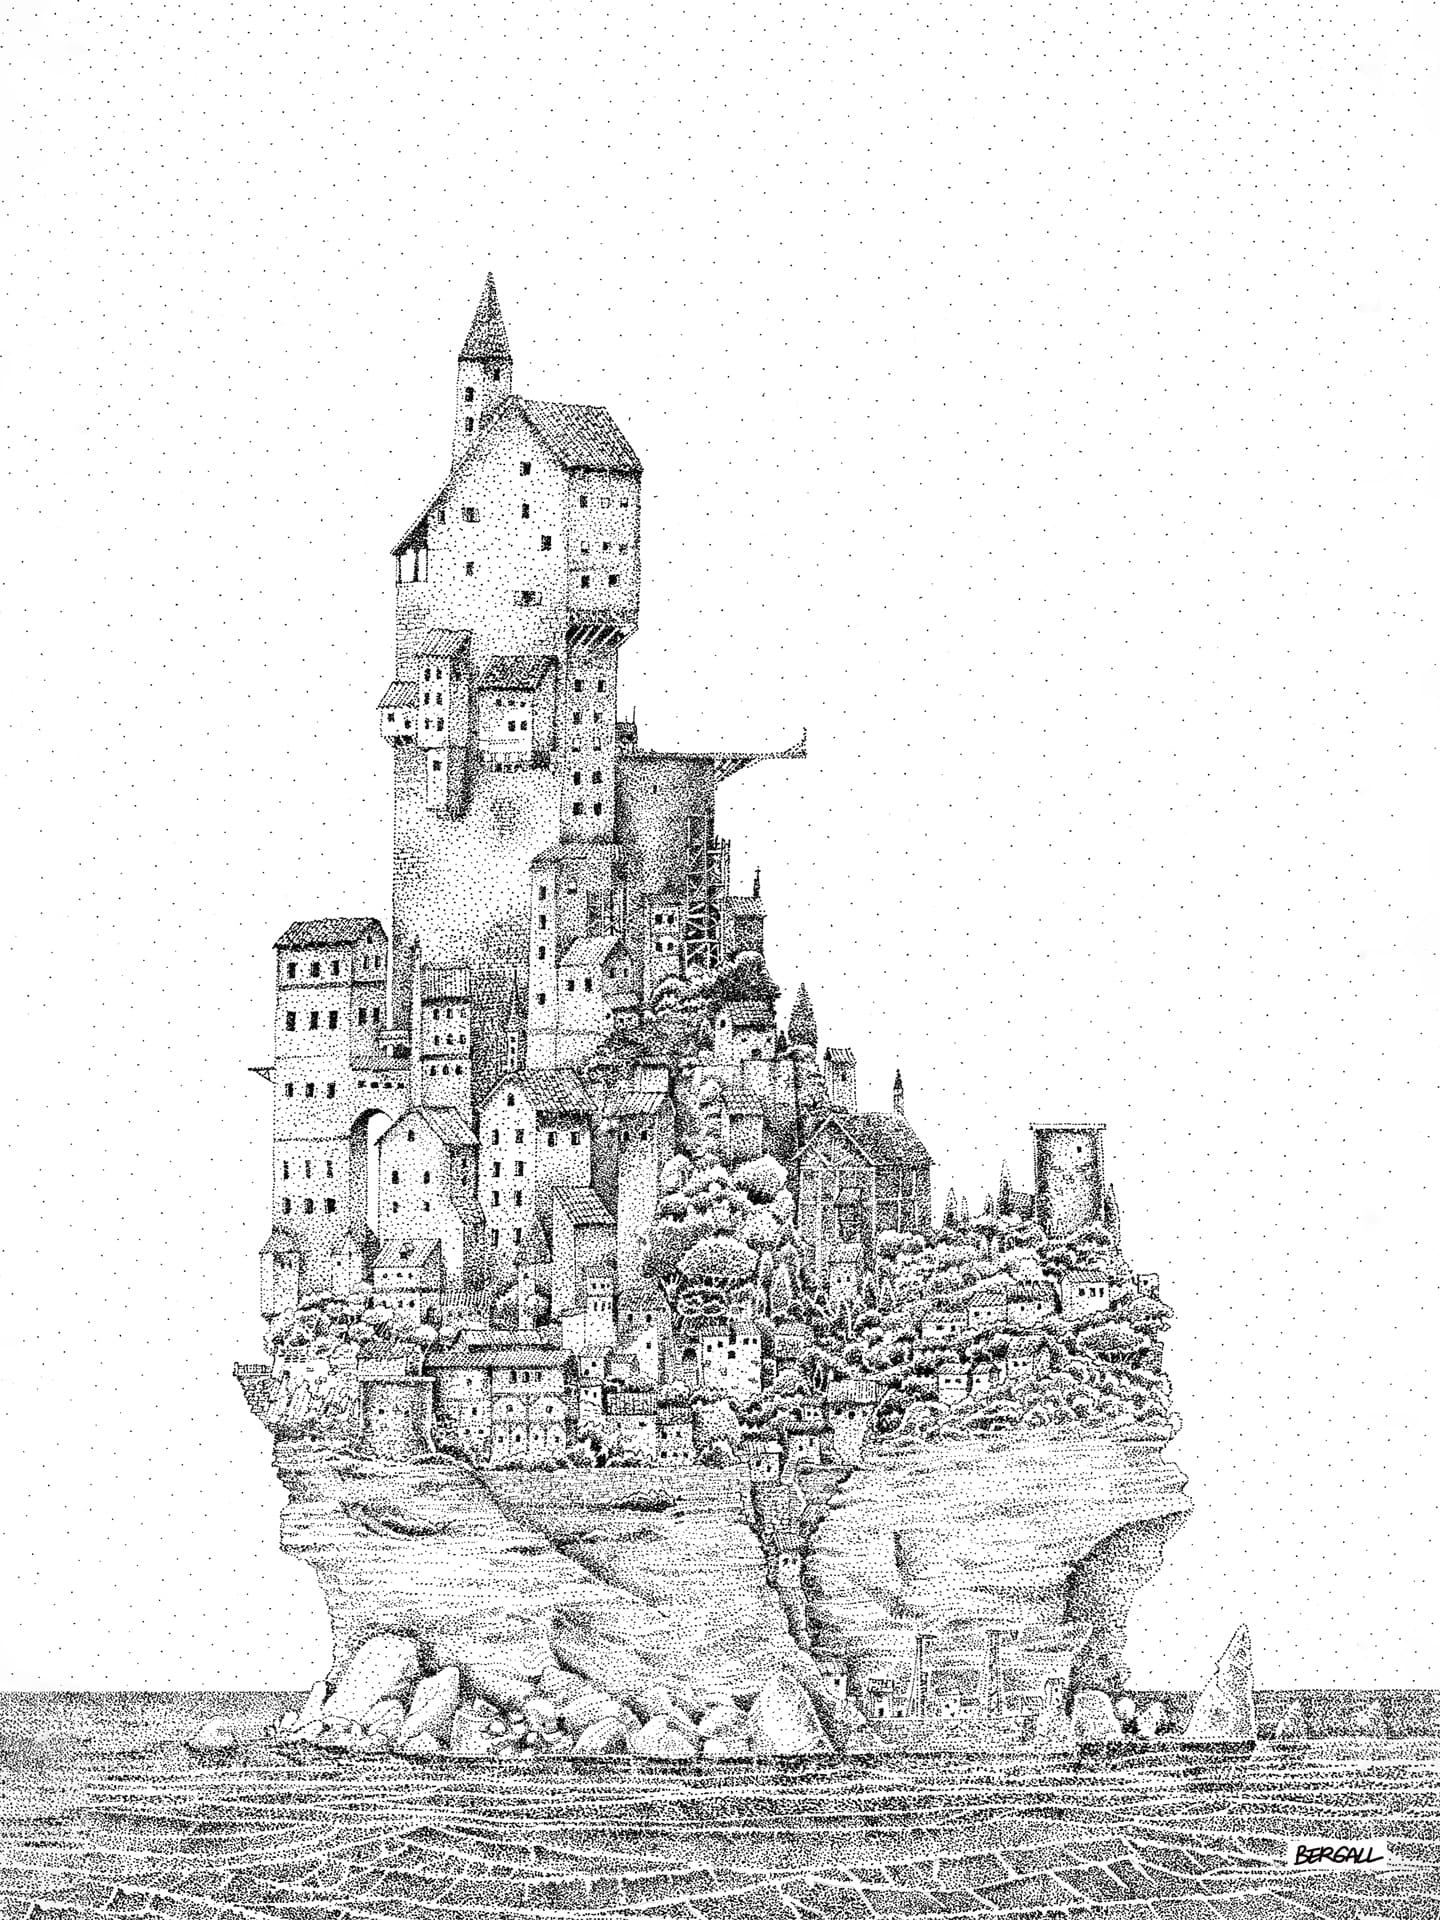 representation d'une cité entourée d'eau dessinée en pointillisme